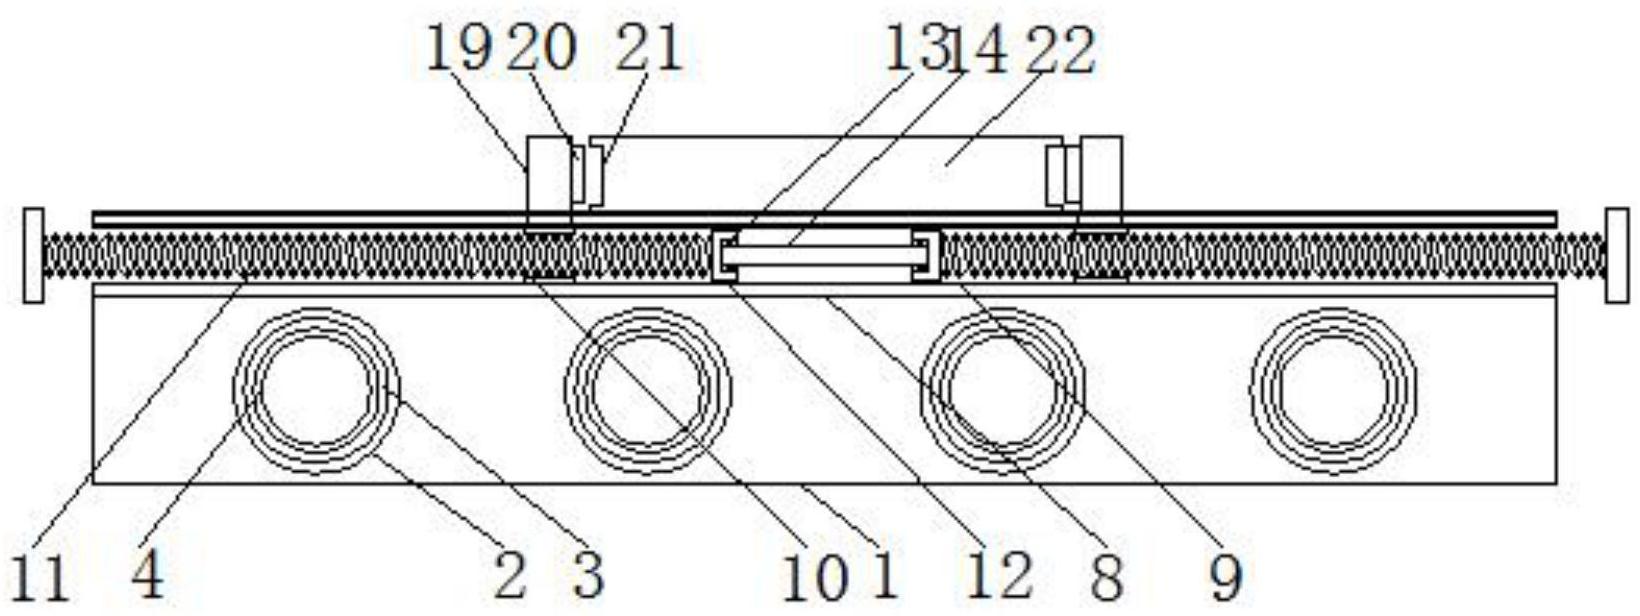 一种低阻抗插接型多层线路板专利图